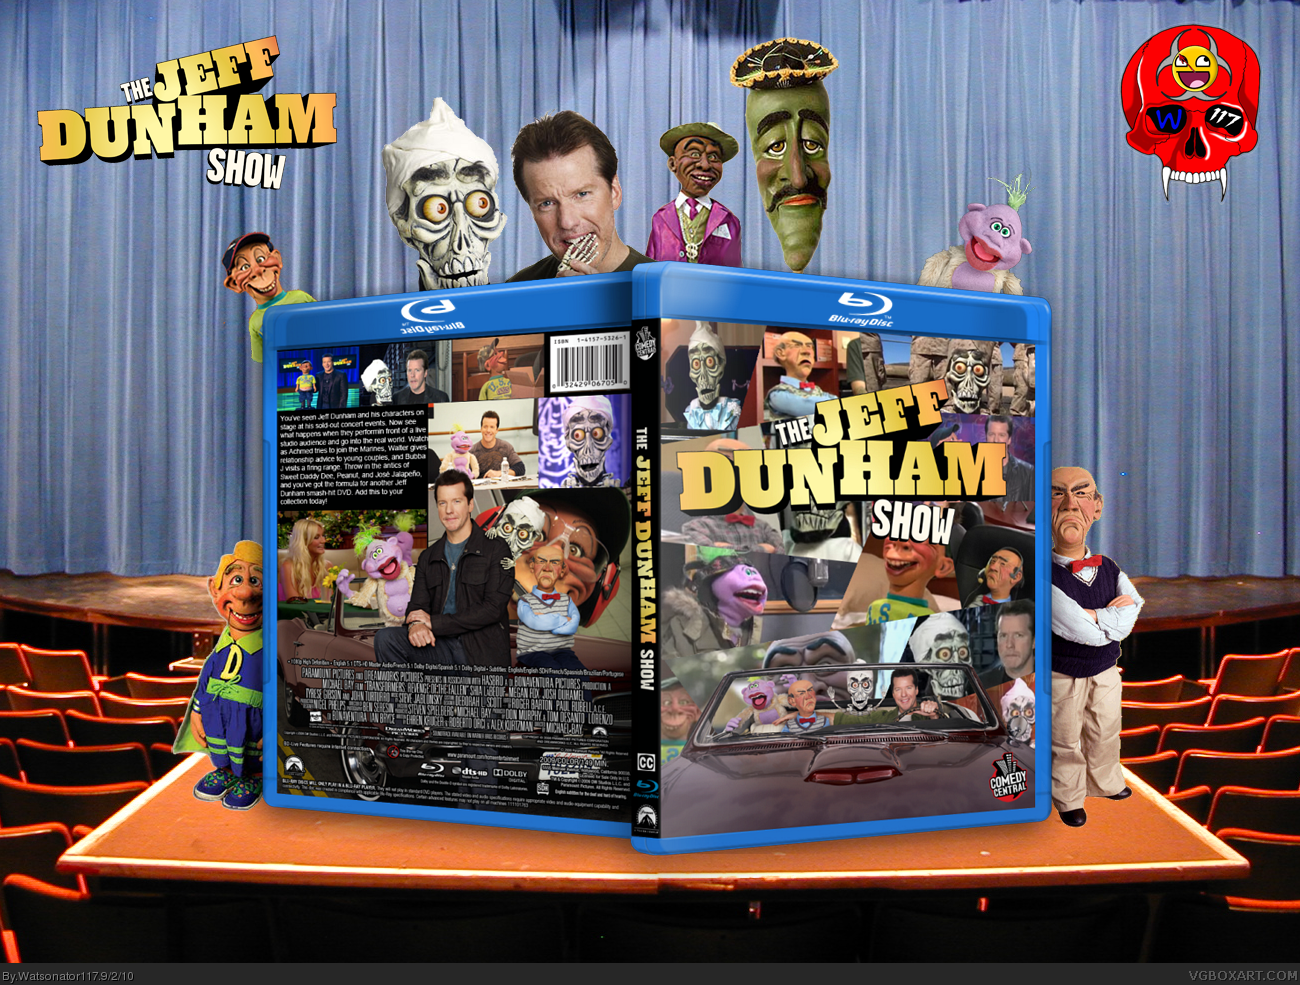 The Jeff Dunham Show box cover